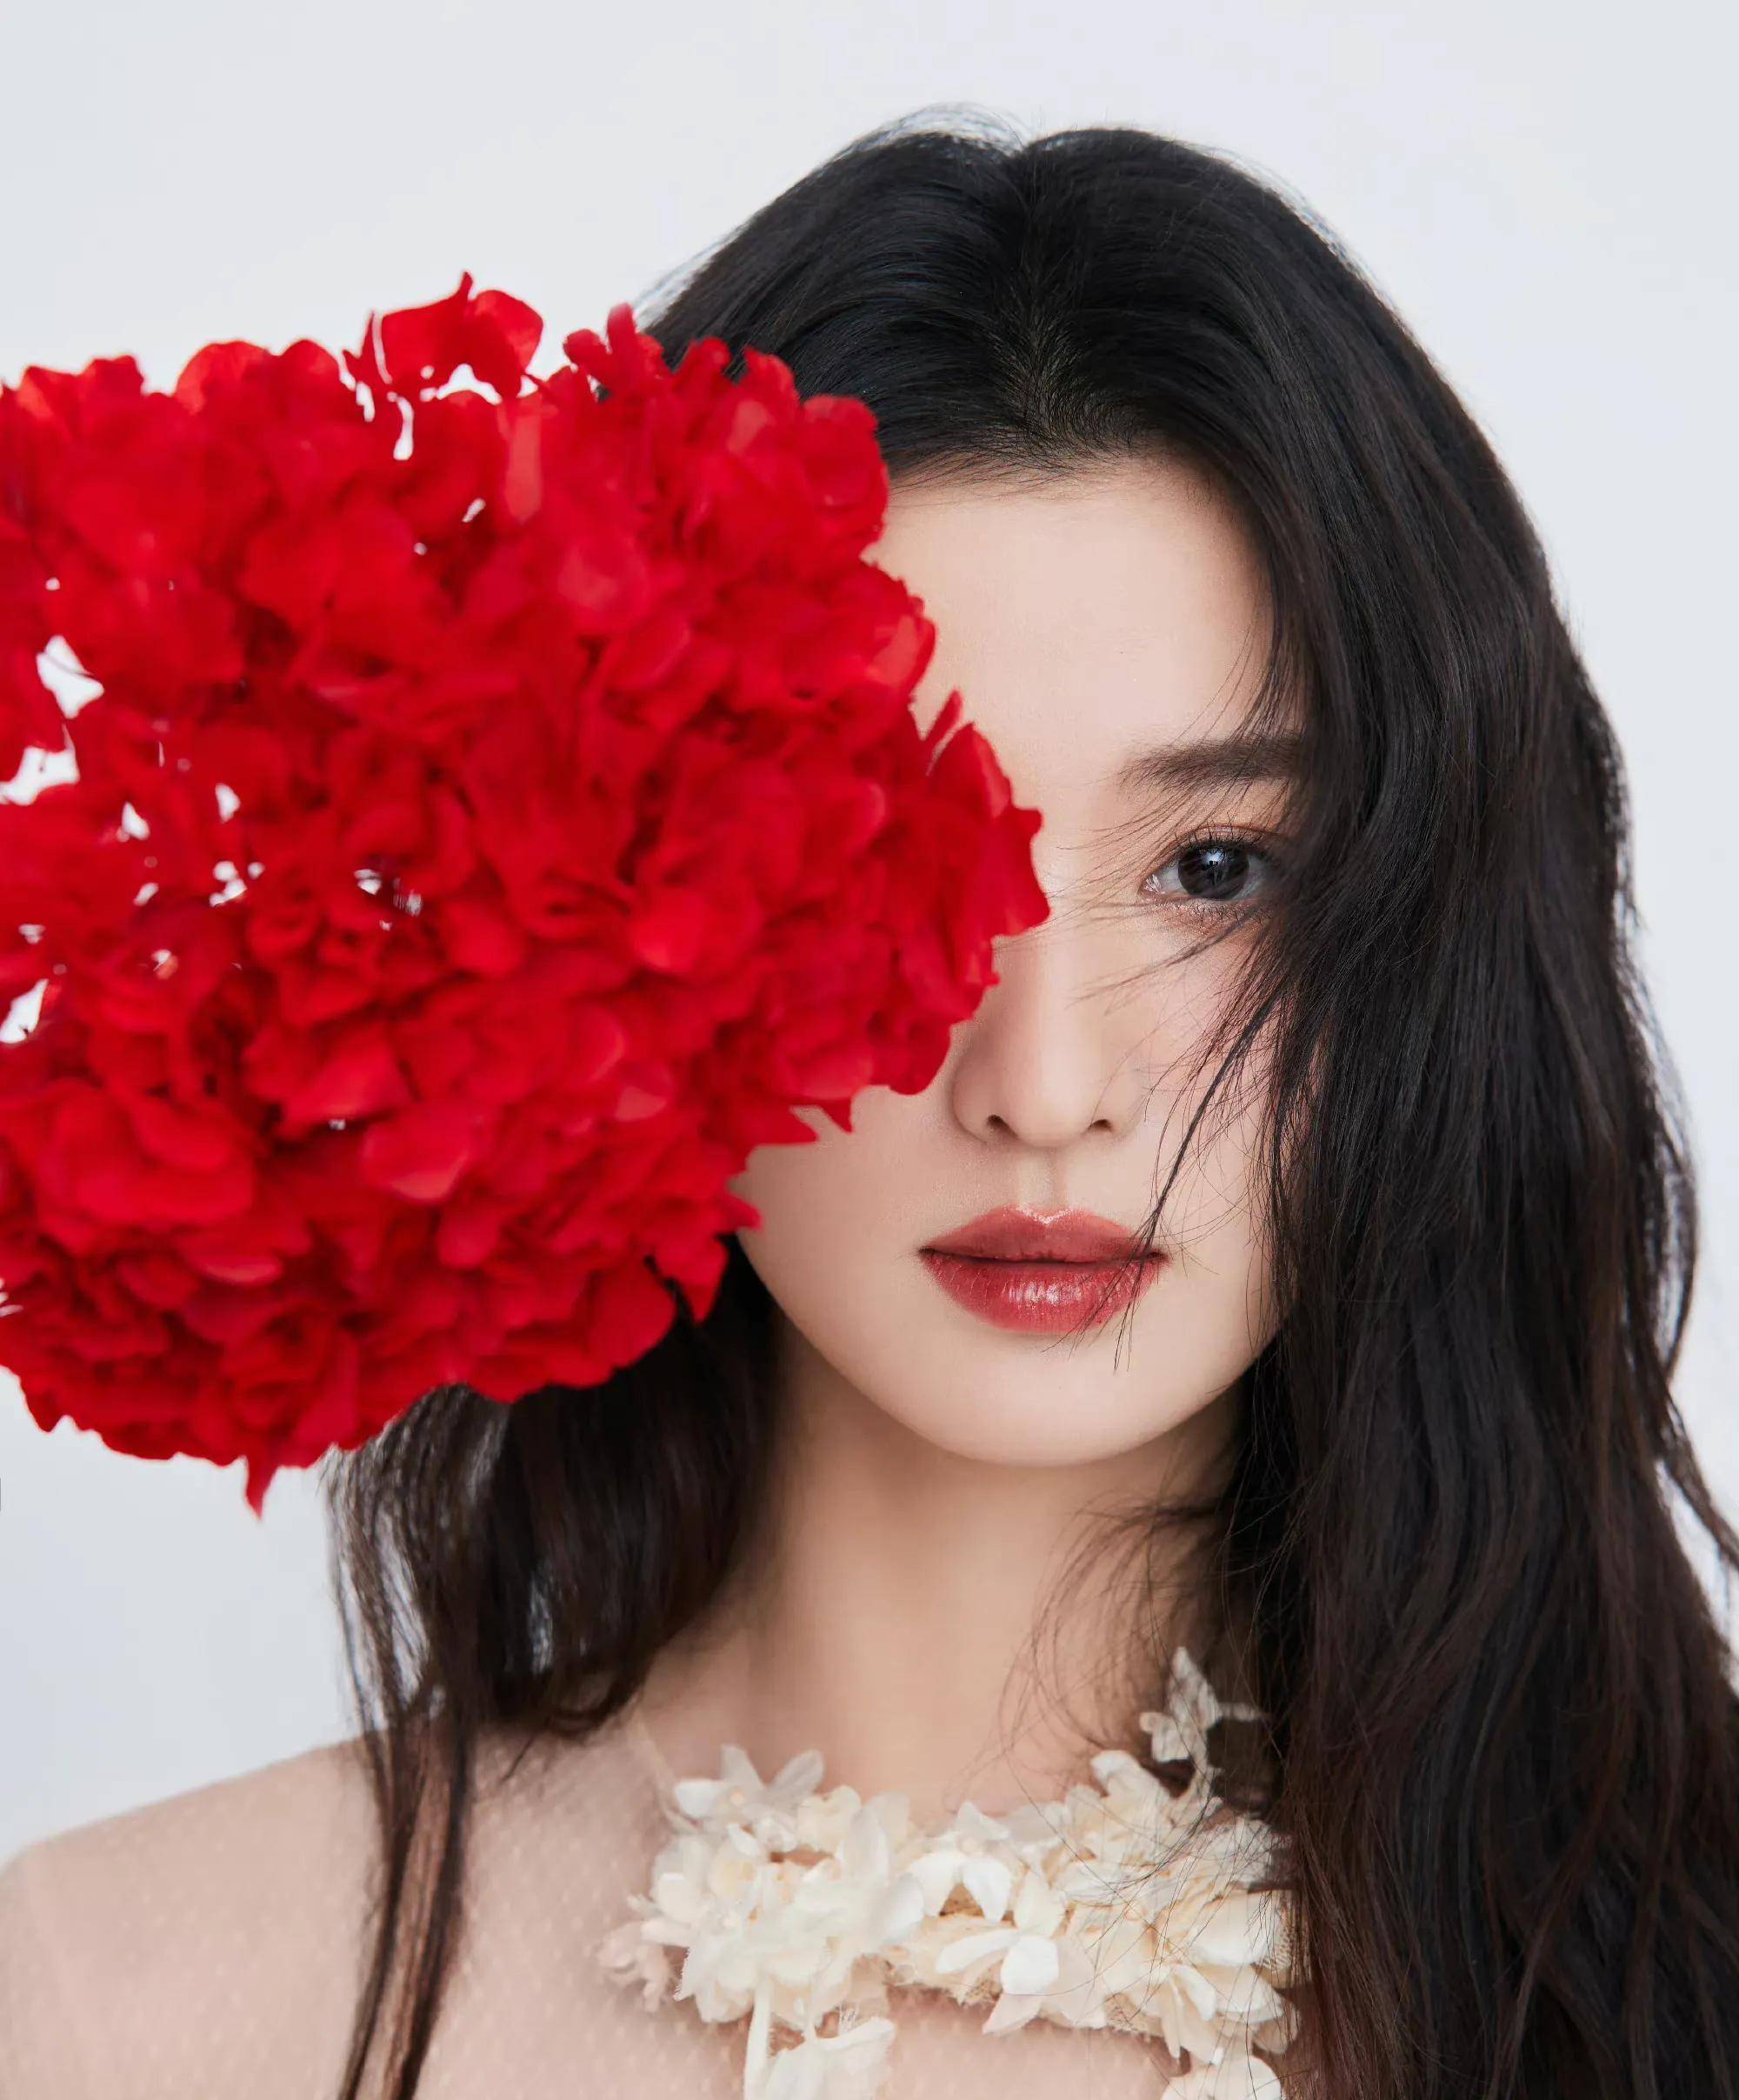 王楚然嗮照庆生,与红花相伴,展现自身带有的美感